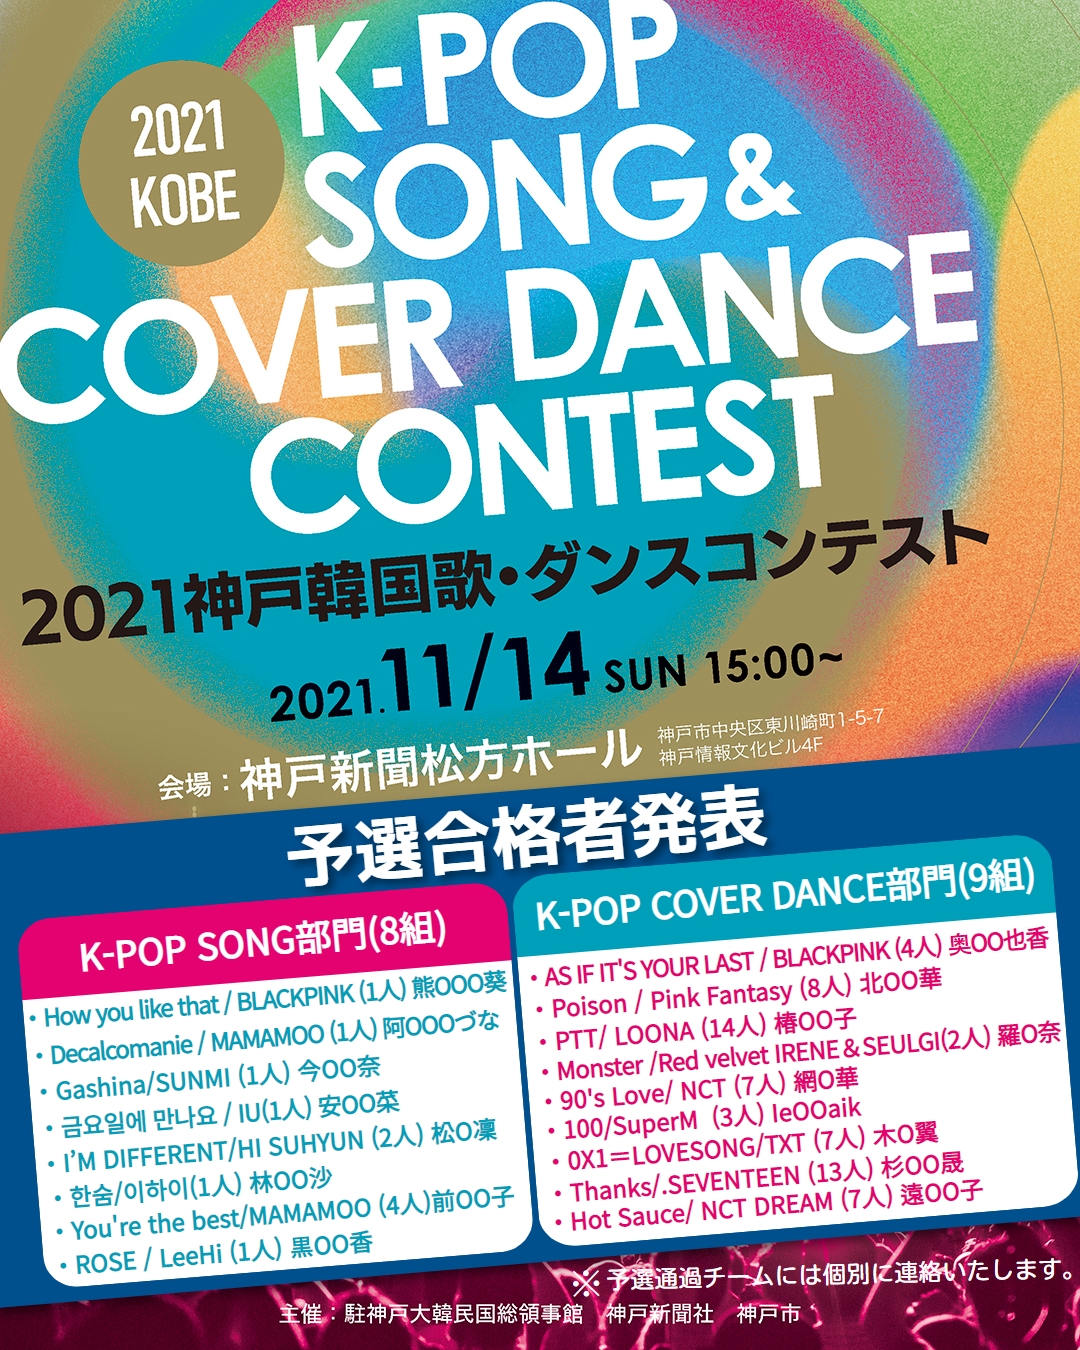 21神戸韓国歌 ダンスコンテスト 合格者発表 상세보기 告知事項駐神戸大韓民国総領事館